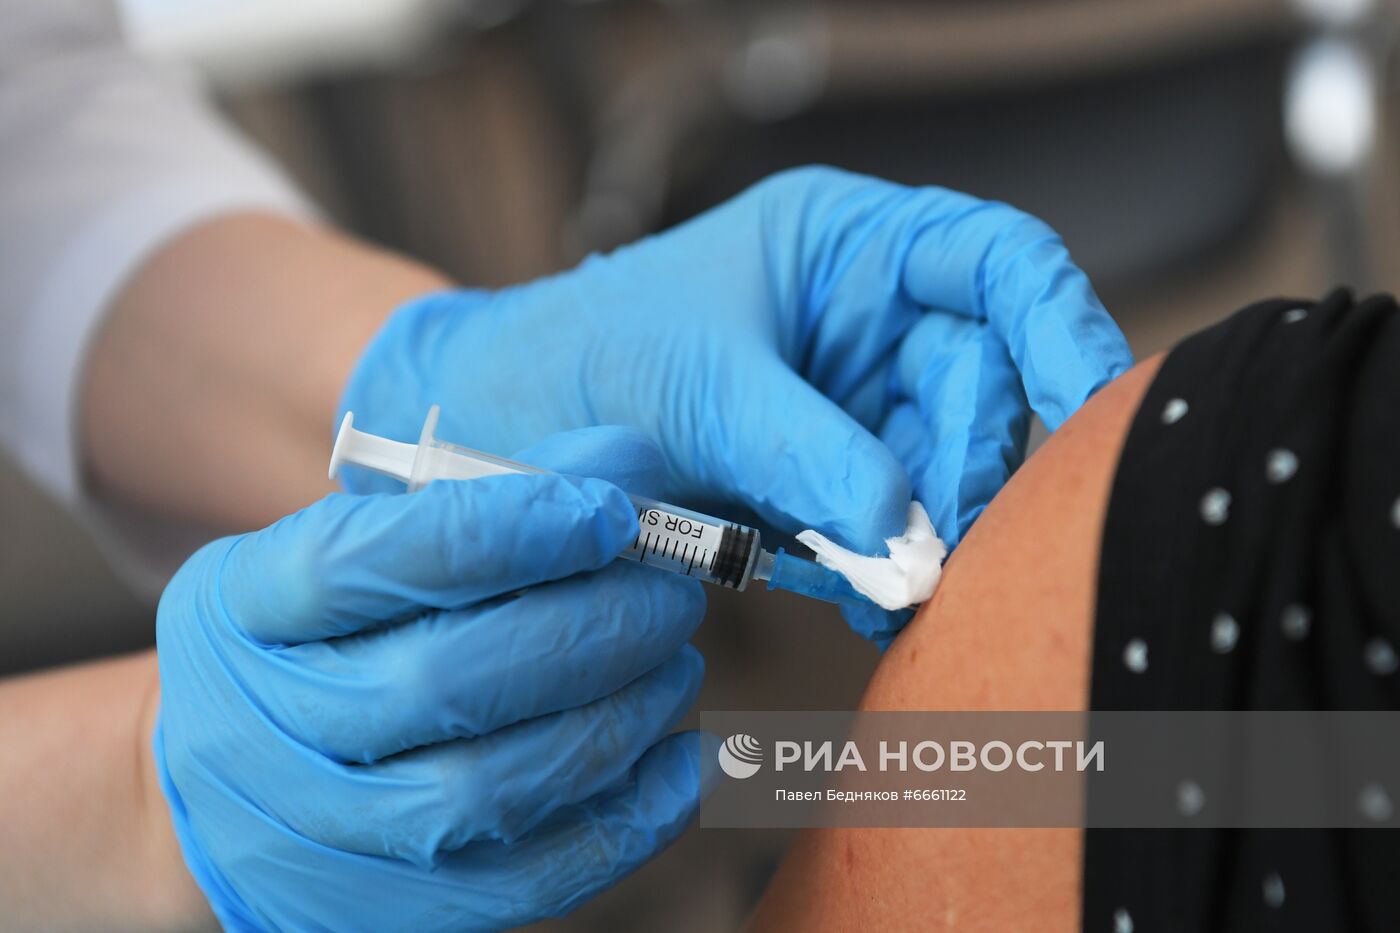 Вакцинация от COVID-19 в Москве